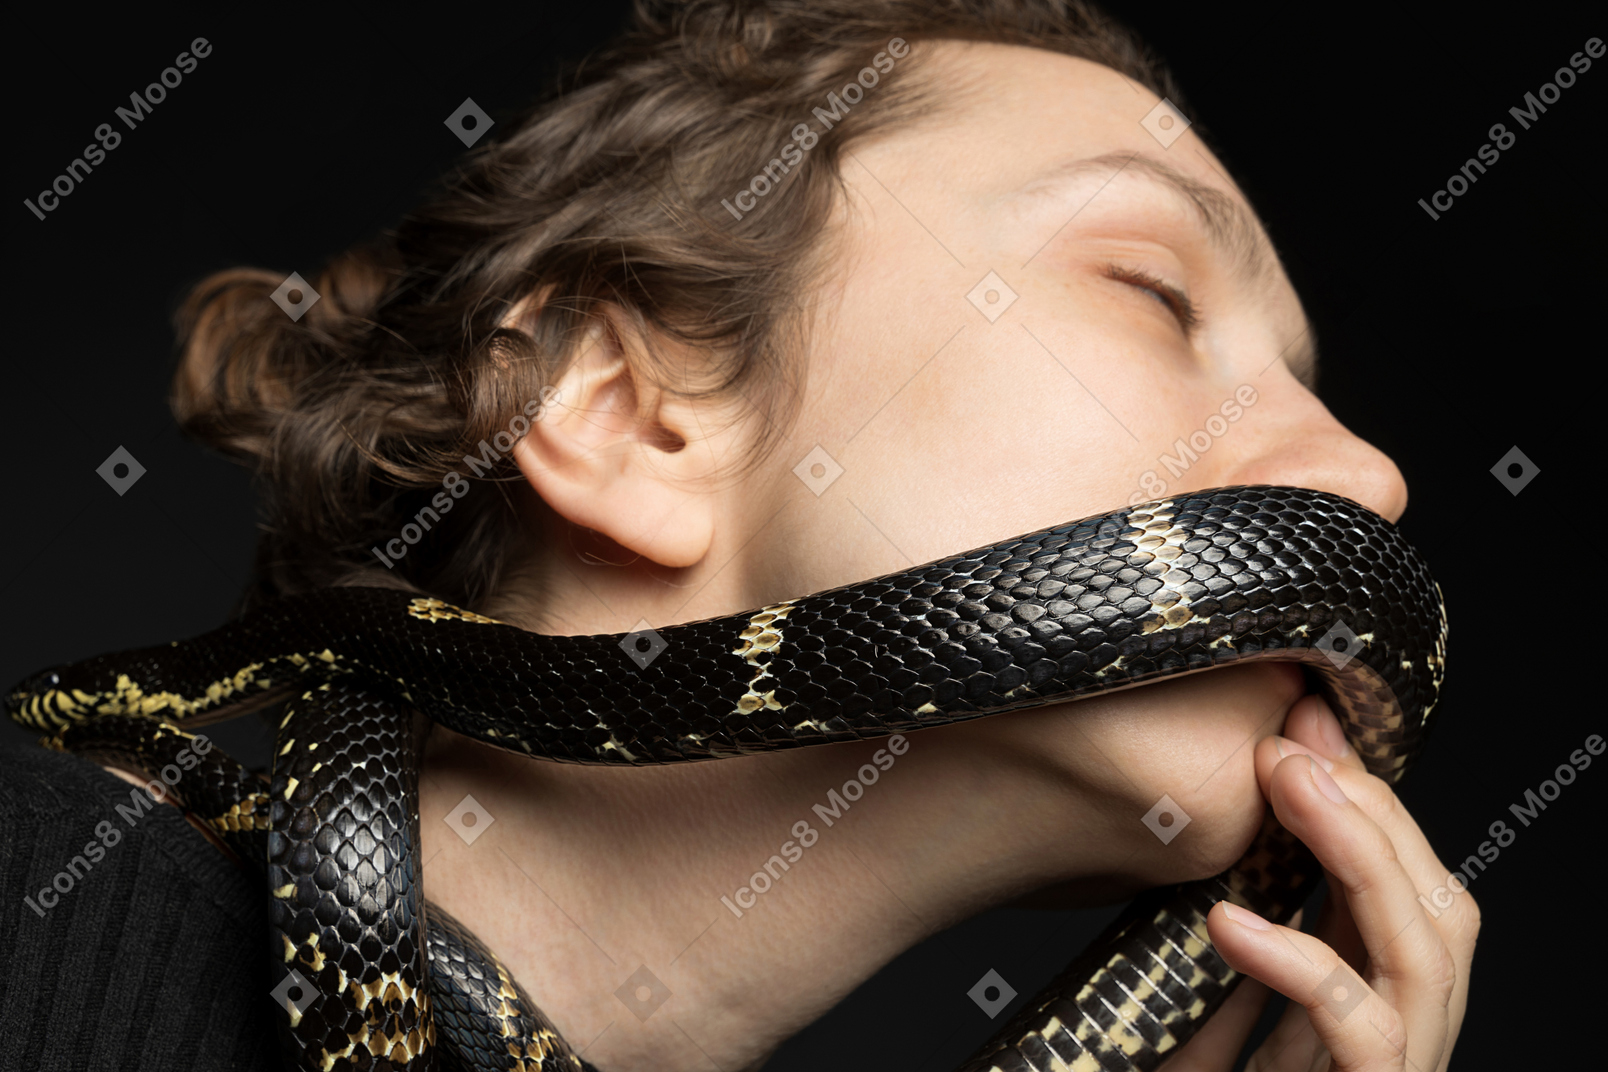 Linda mujer besando a una serpiente